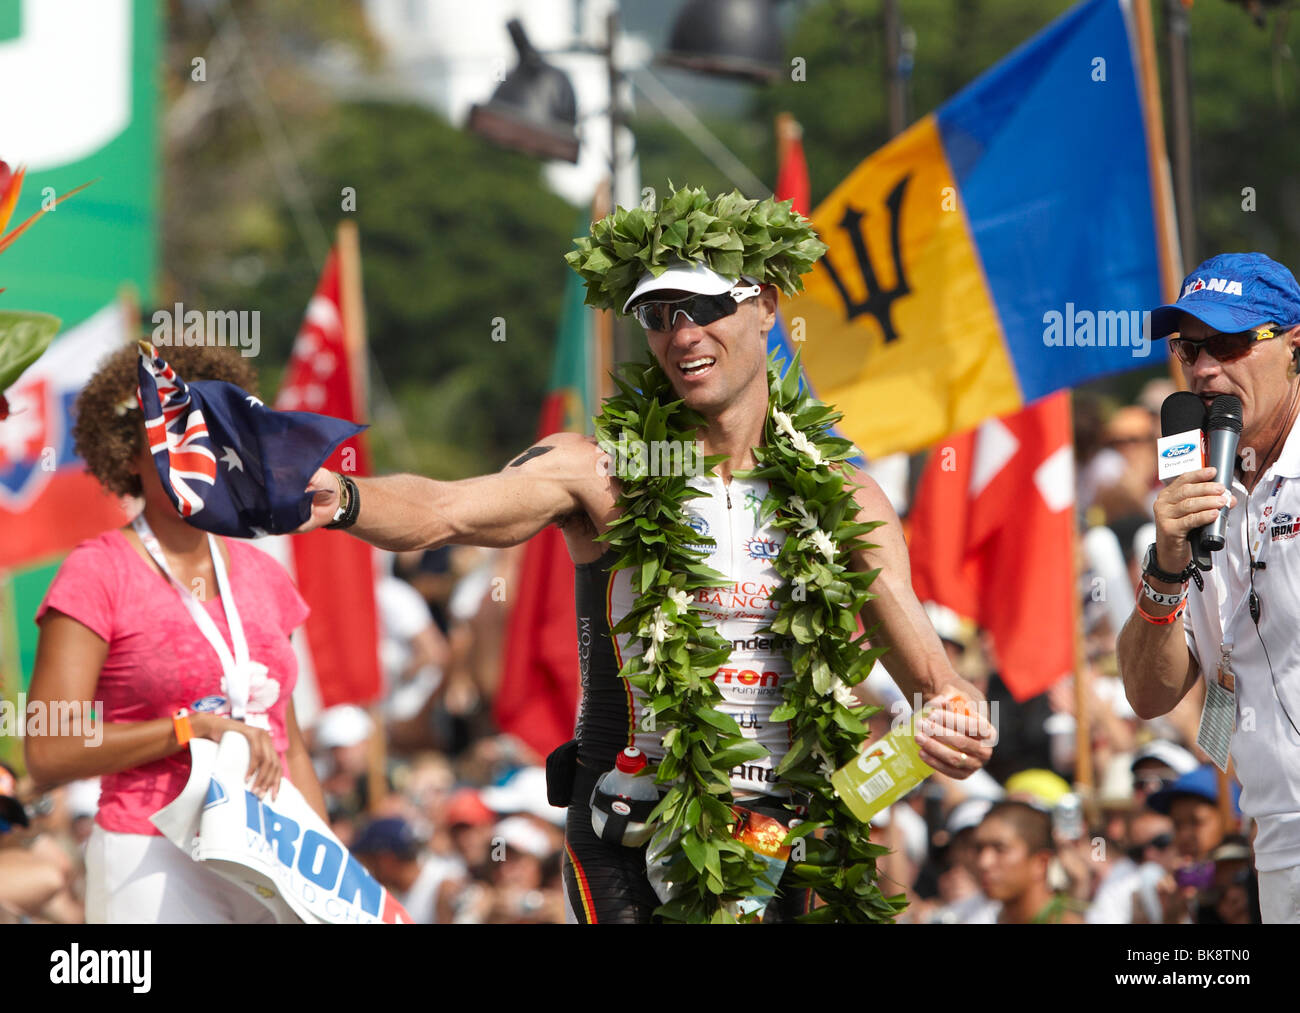 El australiano Craig Alexander cruzar la línea de llegada del Campeonato del Mundo de Triatlón Ironman como el ganador en 8:20:21 ho Foto de stock